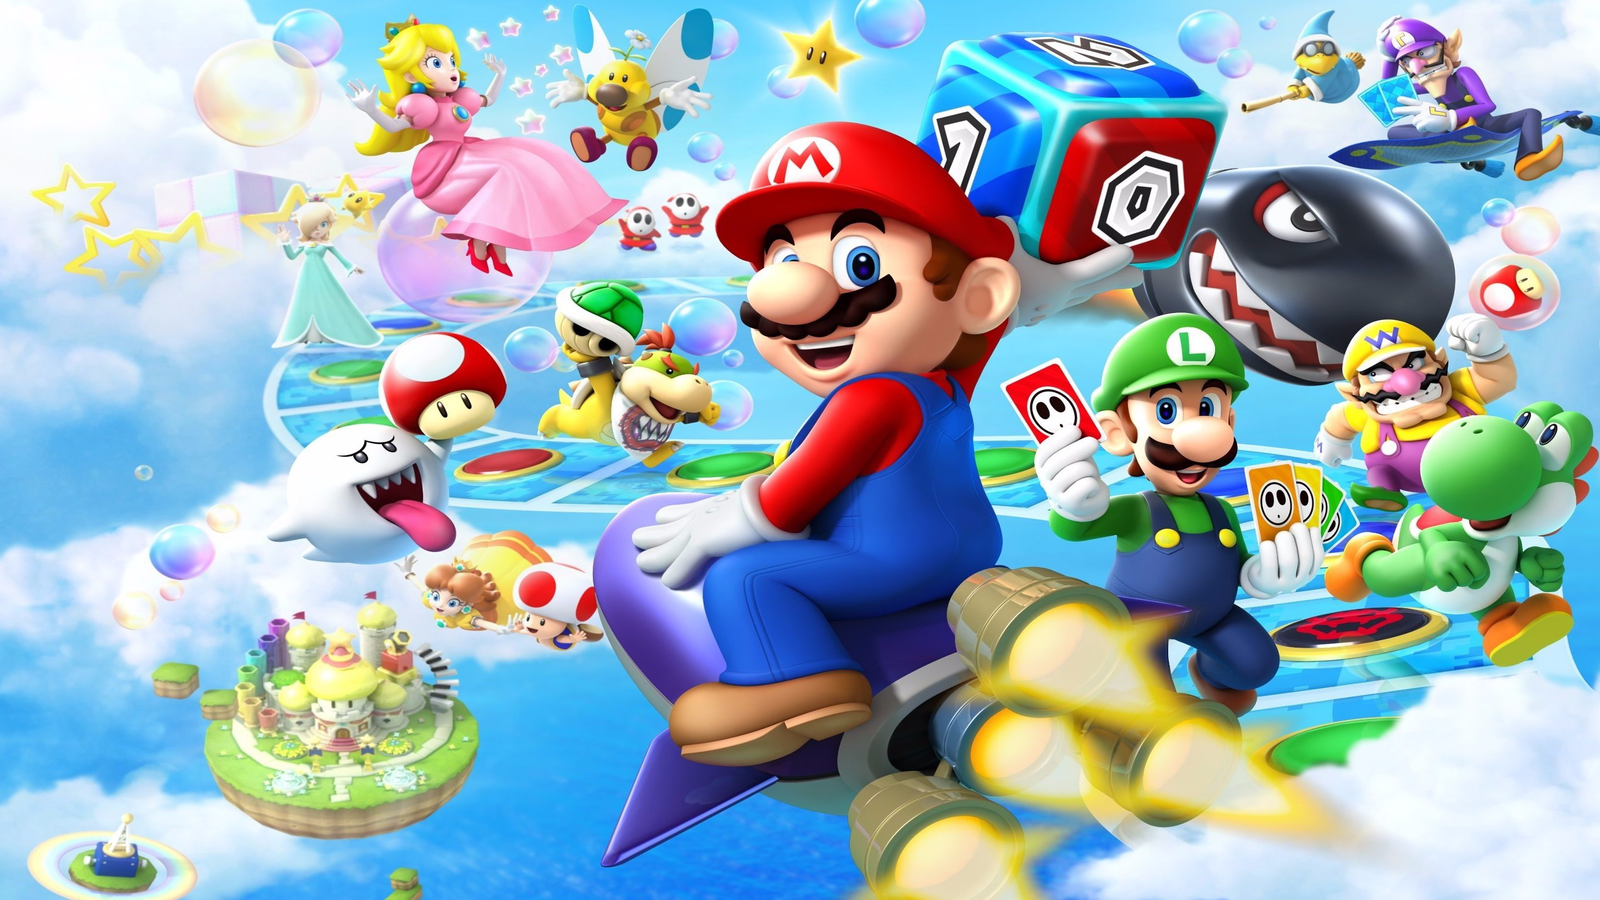  Mario Party 10 : Nintendo of America